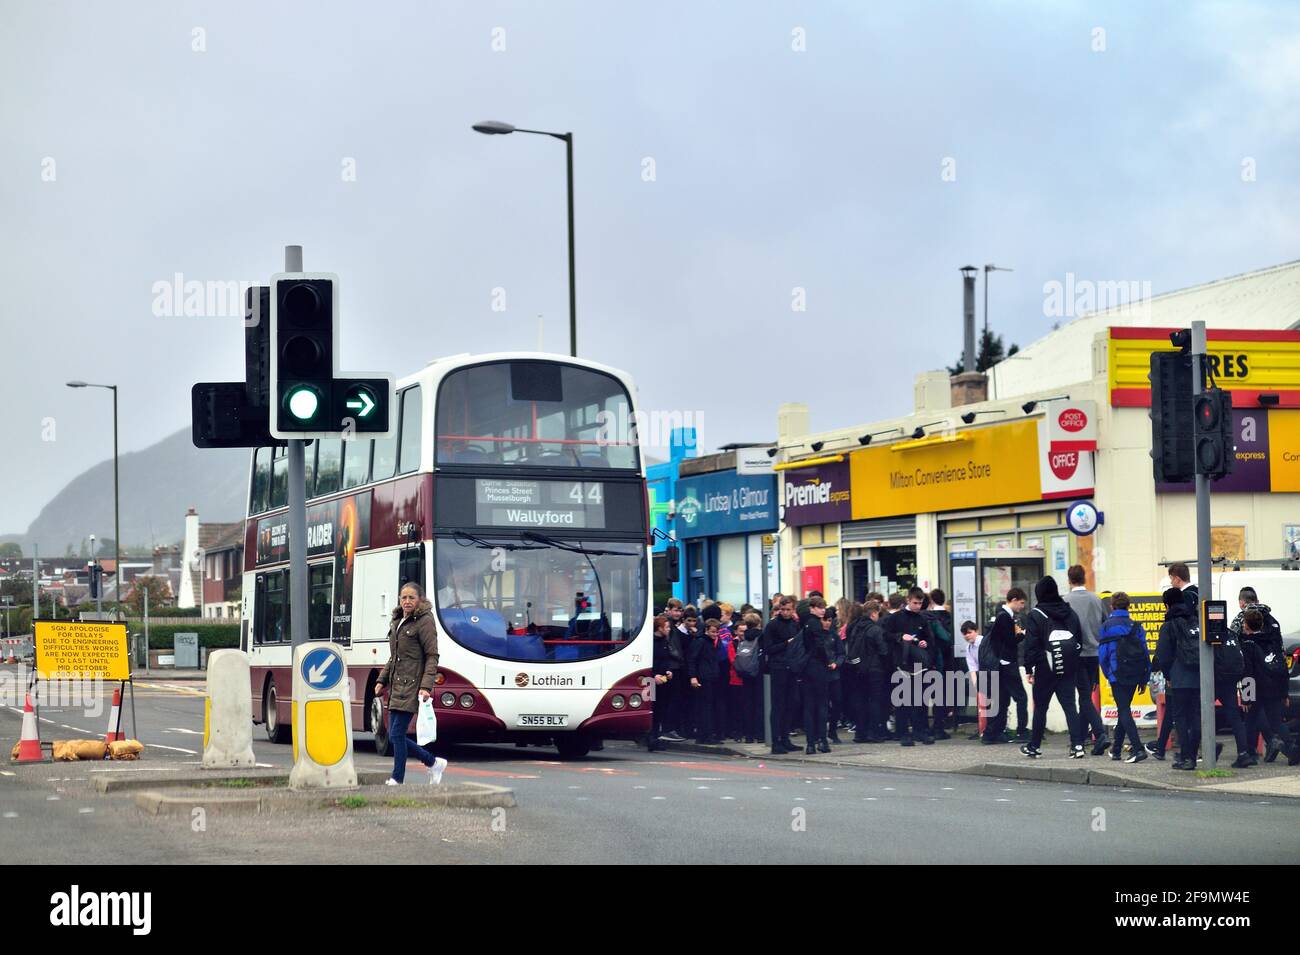 Edimburgo, Escocia, Reino Unido. Los autobuses de dos pisos proporcionan una porción importante del transporte público en la ciudad. Foto de stock